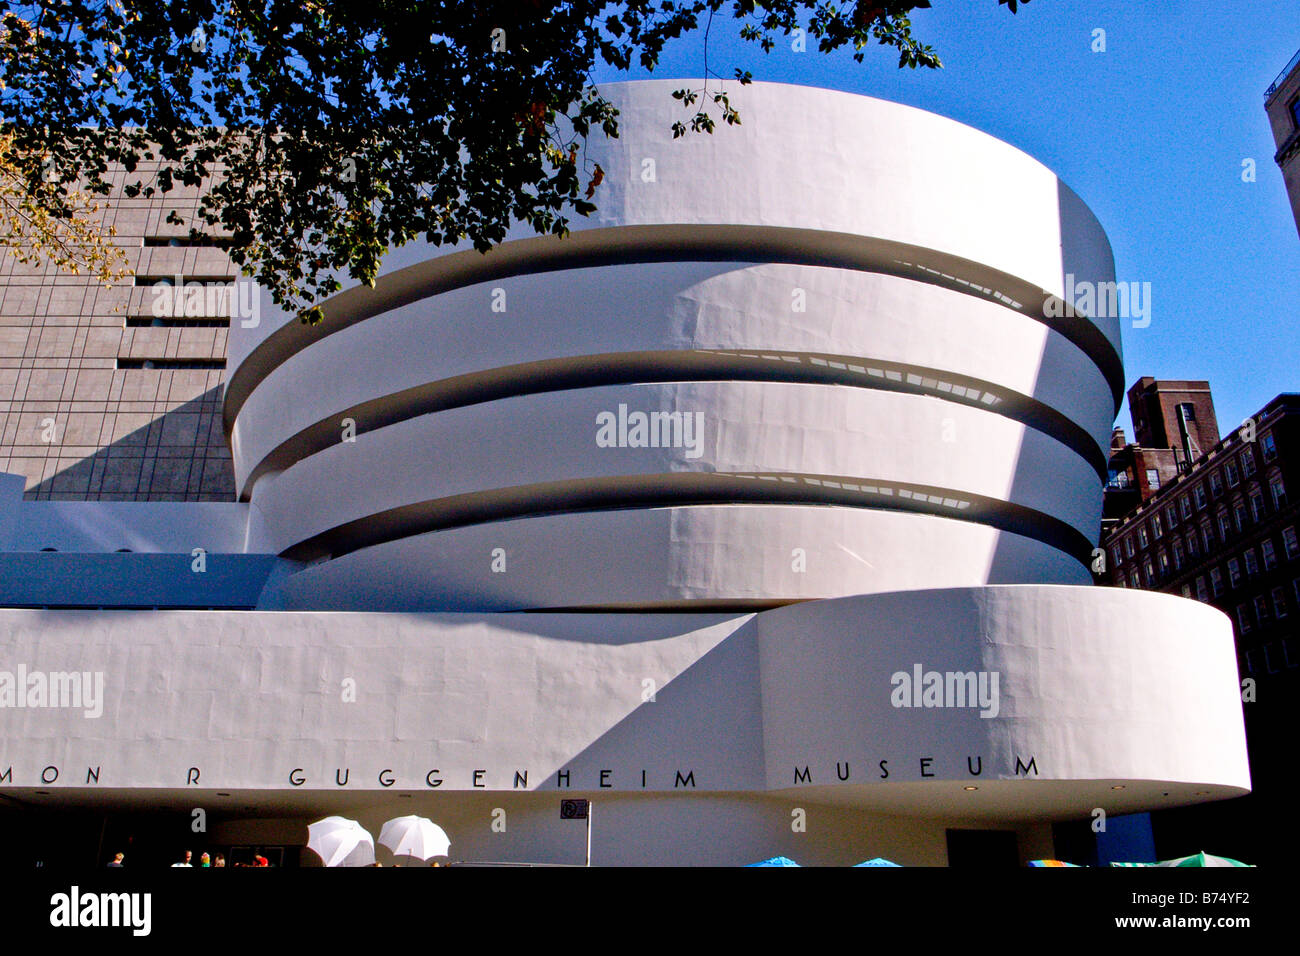 The Solomon Guggenheim Museum in New York Stock Photo